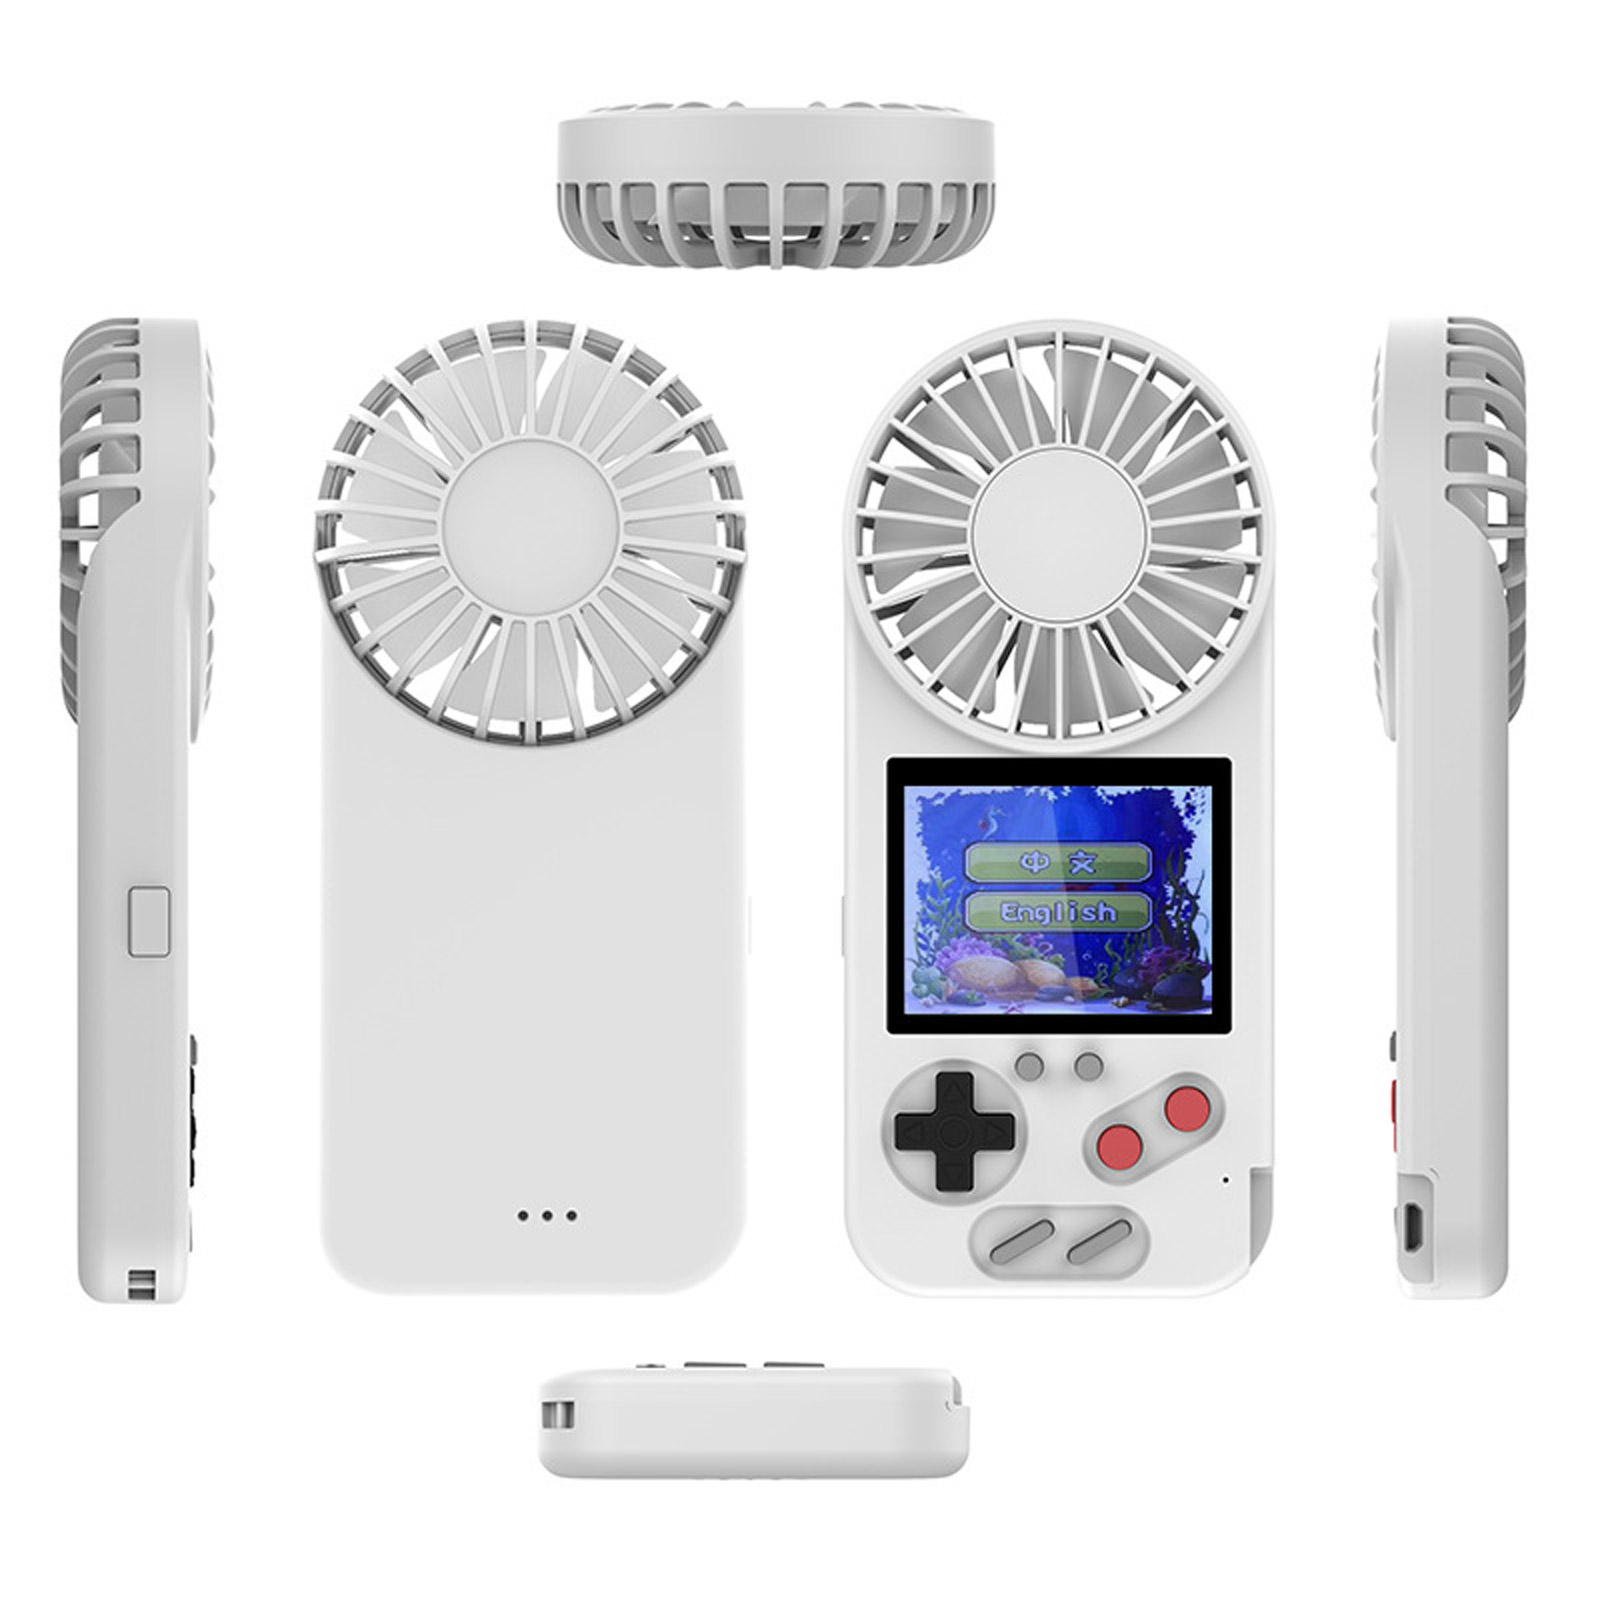 Портативная игровая приставка, геймпад SZDIIER D-5, 500 игр в 1, c вентилятором, аккумулятор 800 mAh, цвет белый